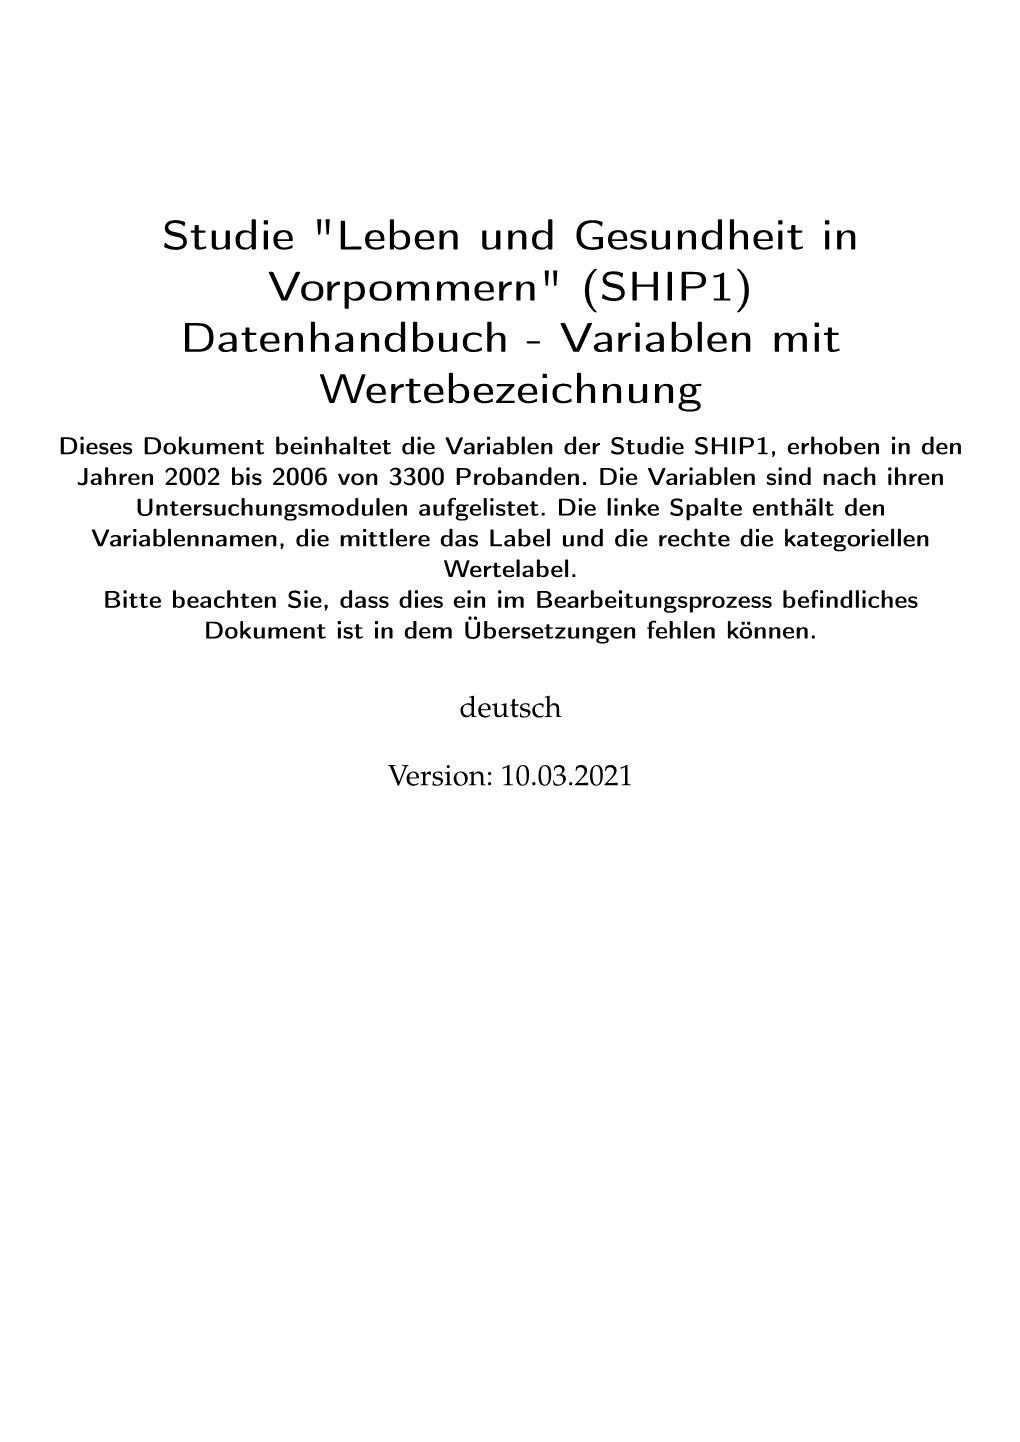 Studie "Leben Und Gesundheit in Vorpommern" (SHIP1